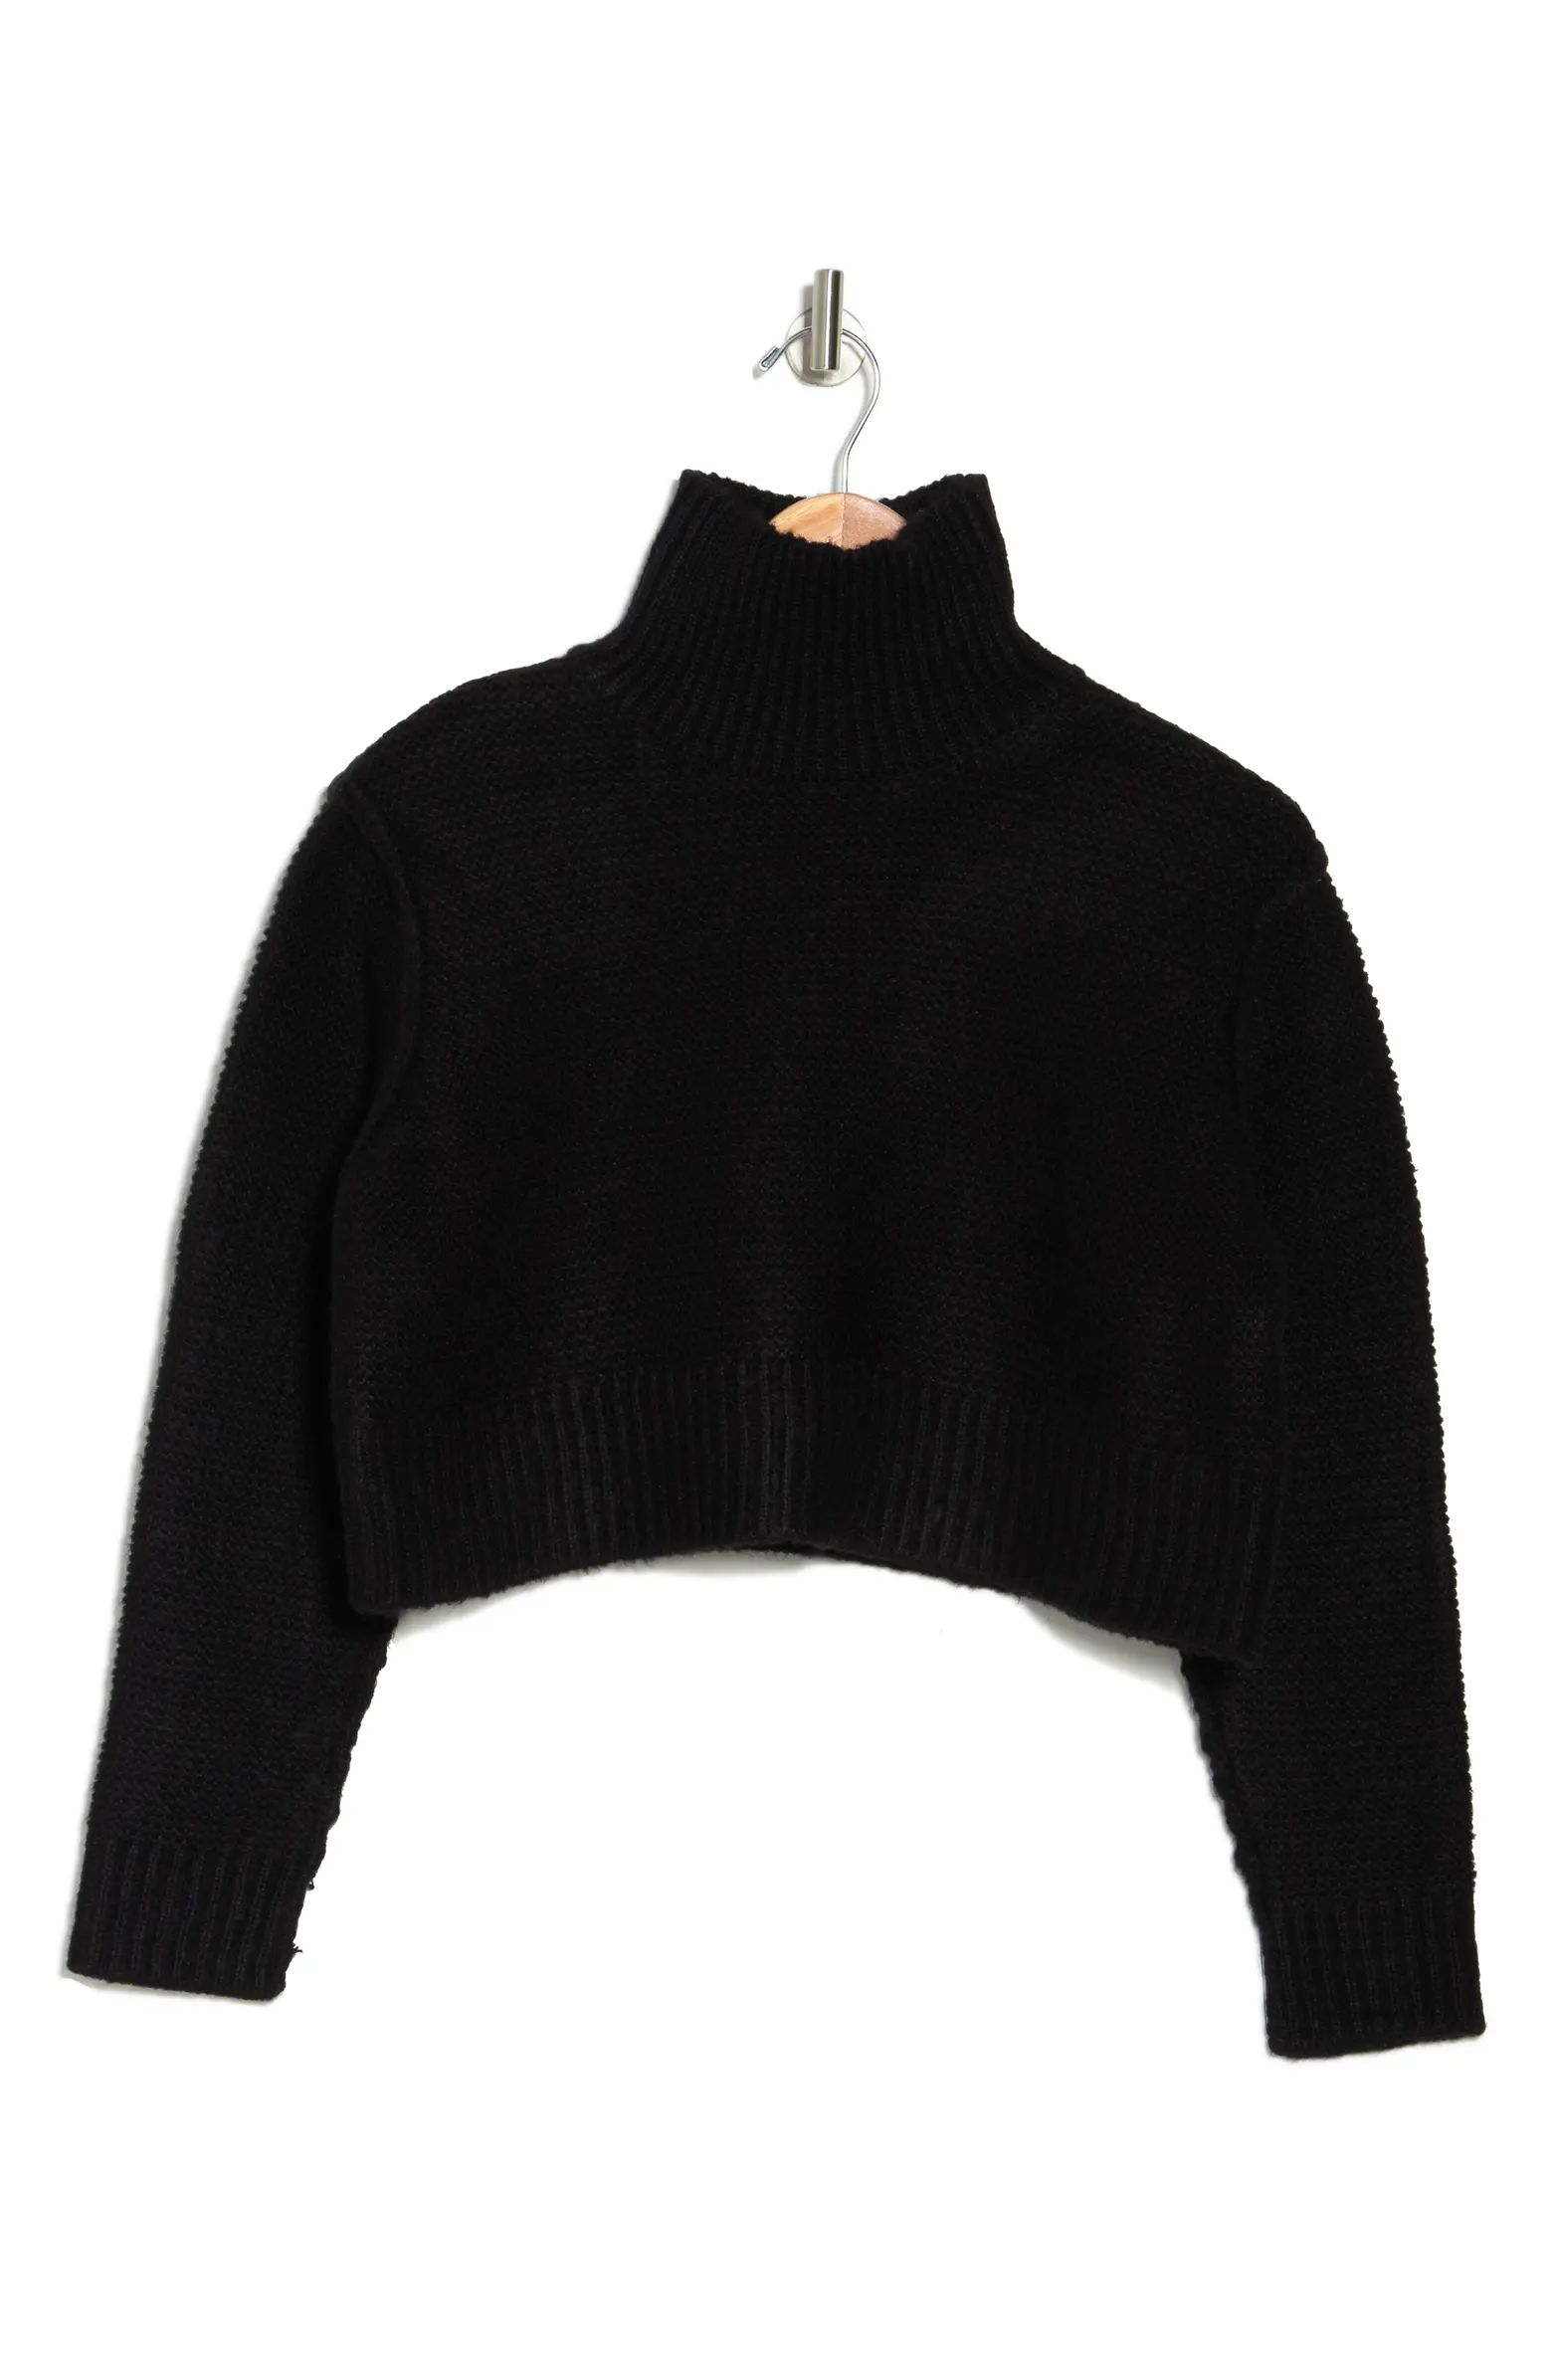 Mockneck Crop Sweater | Nordstrom Rack